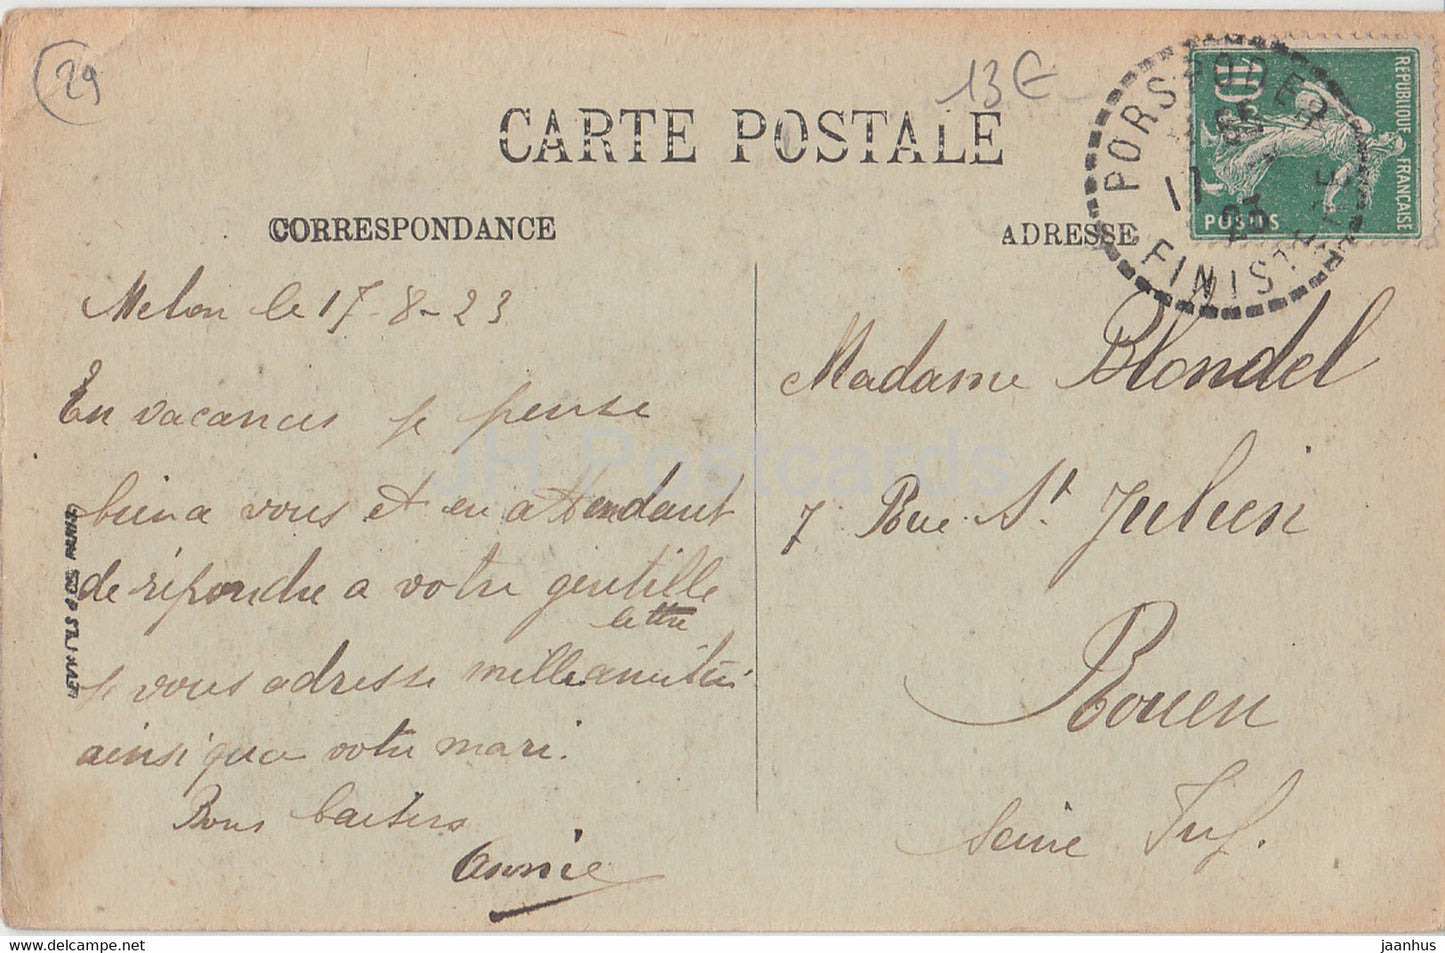 Ile Melon - Le Menhir et les Alignements - LP Brest - old postcard - 1923 - France - used